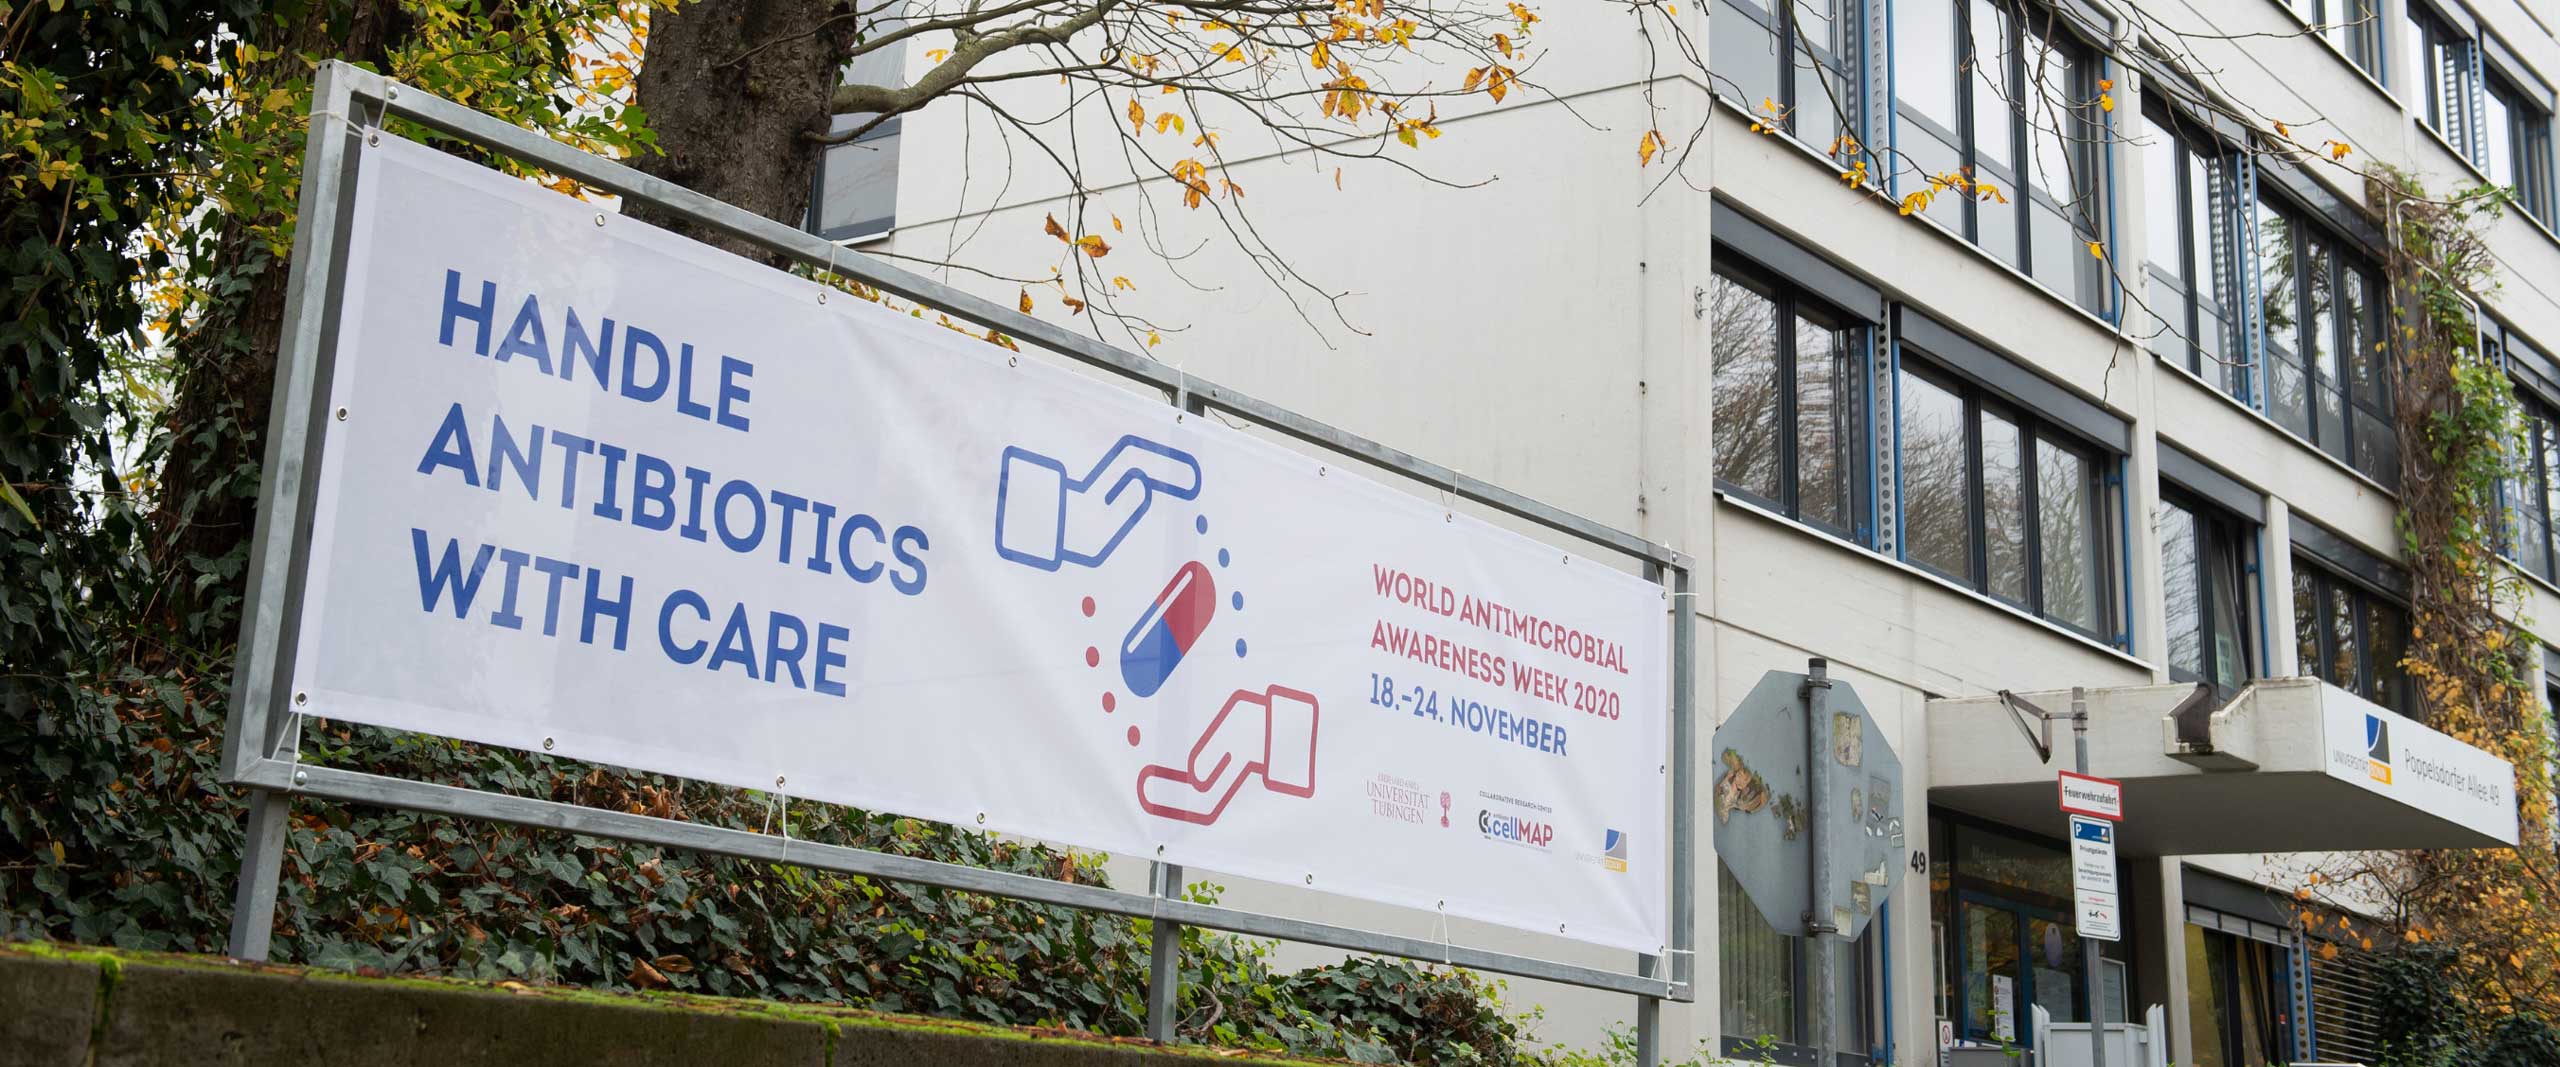 Gemeinsam Flagge zeigen für Antibiotika Banner vor dem Gebäude Poppelsdorfer Allee 49.